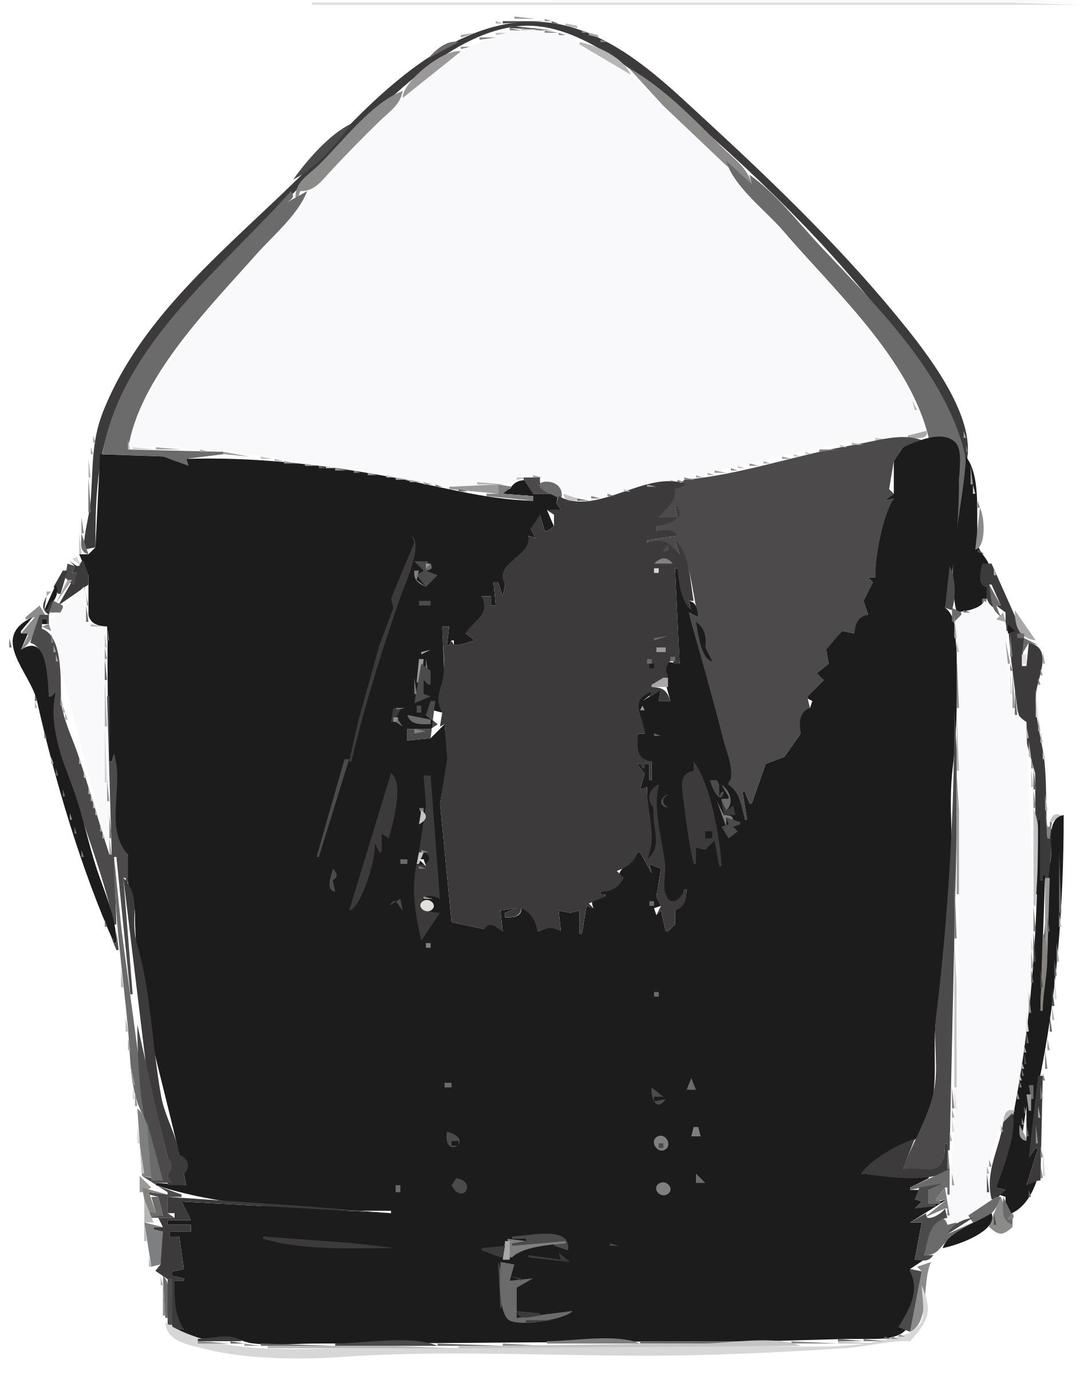 Black Leather Handbag no logo & no background png transparent